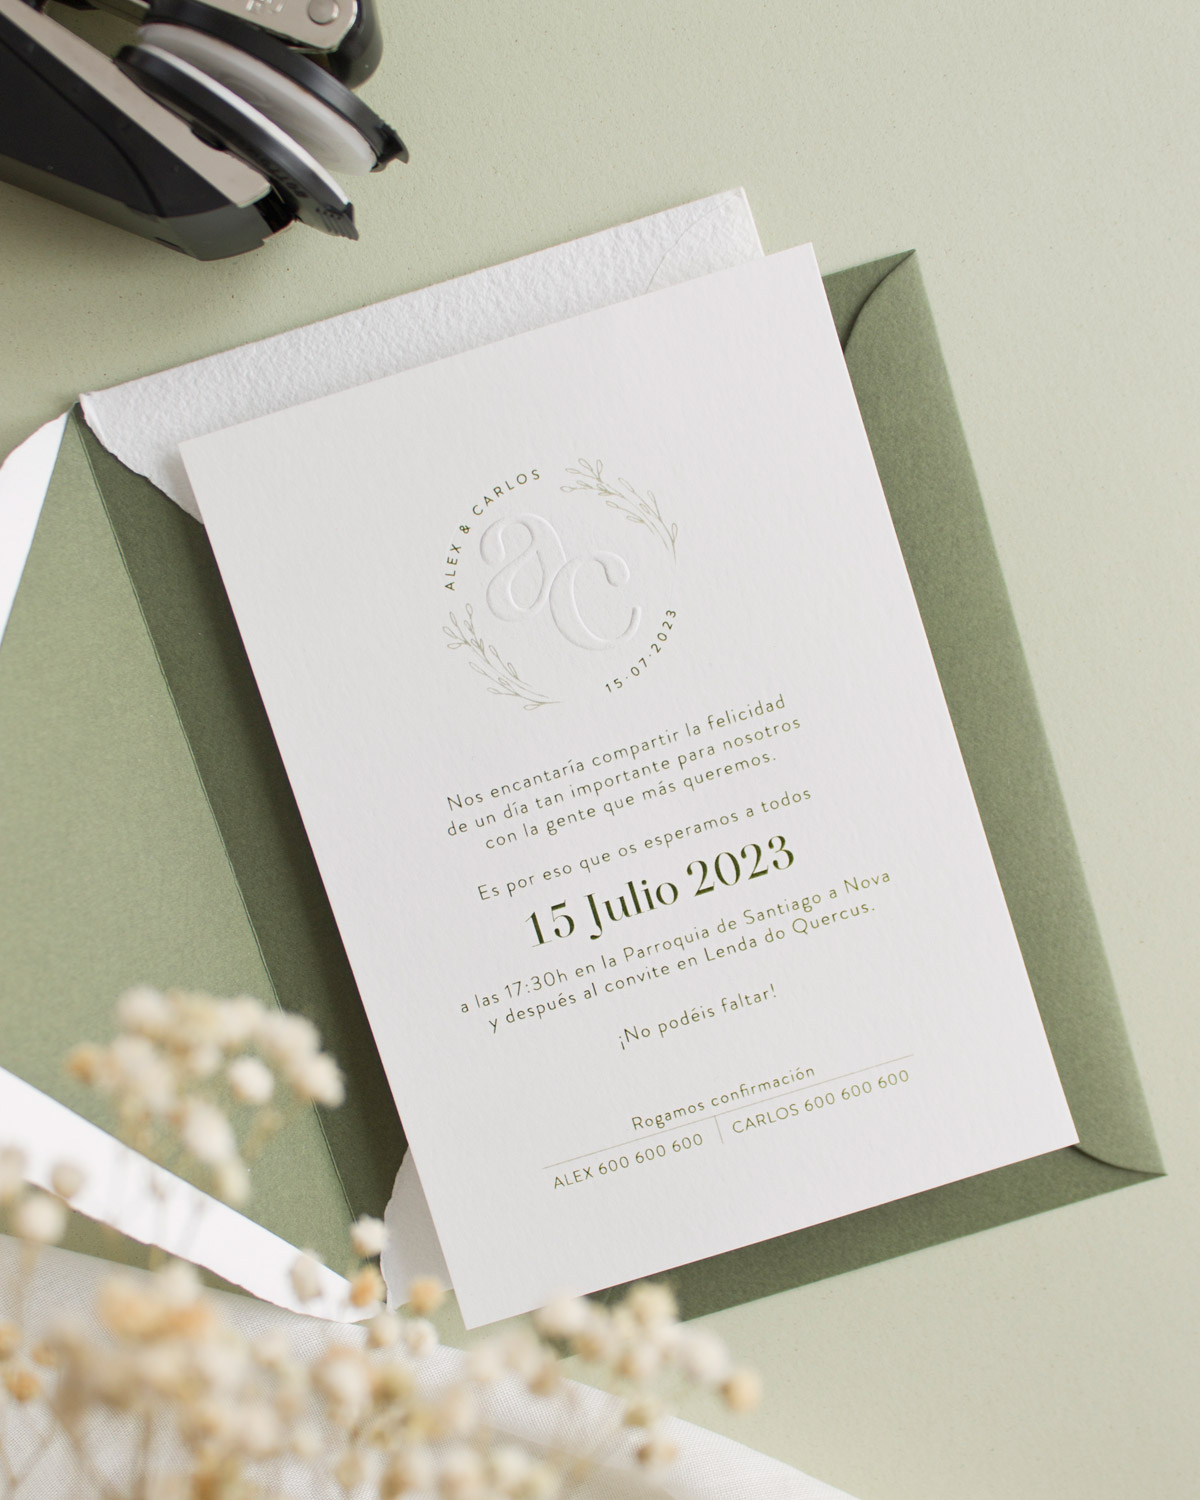 Invitación de boda con logo en relieve en la parte superior: una opción sofisticada para impresionar a tus invitados.